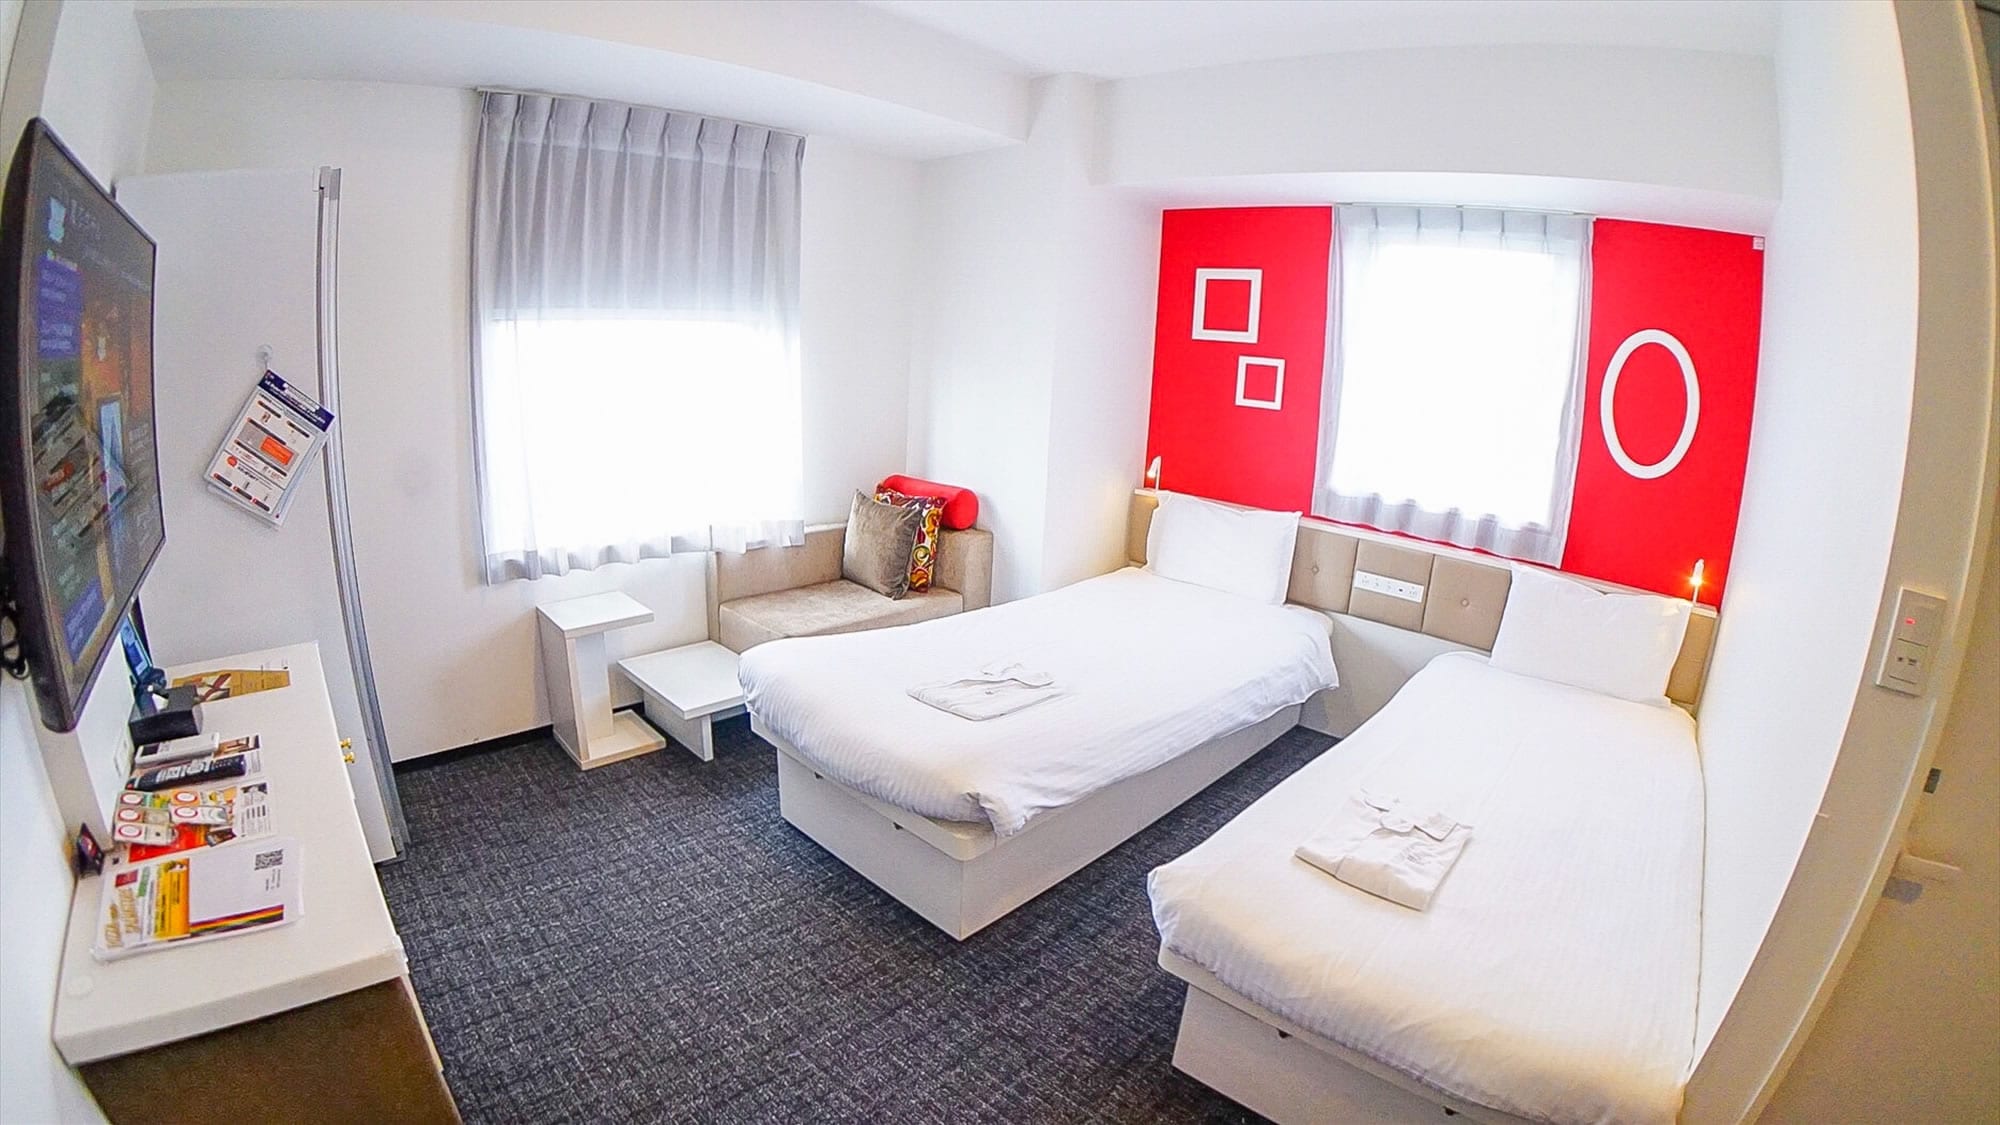  [ห้องมาตรฐานเตียงแฝด] ผู้ใหญ่ 2 คน + 1 คนที่ใช้เตียงร่วมกันสามารถพักในประเภทแยกต่างหากพร้อมเตียงแยกต่างหาก